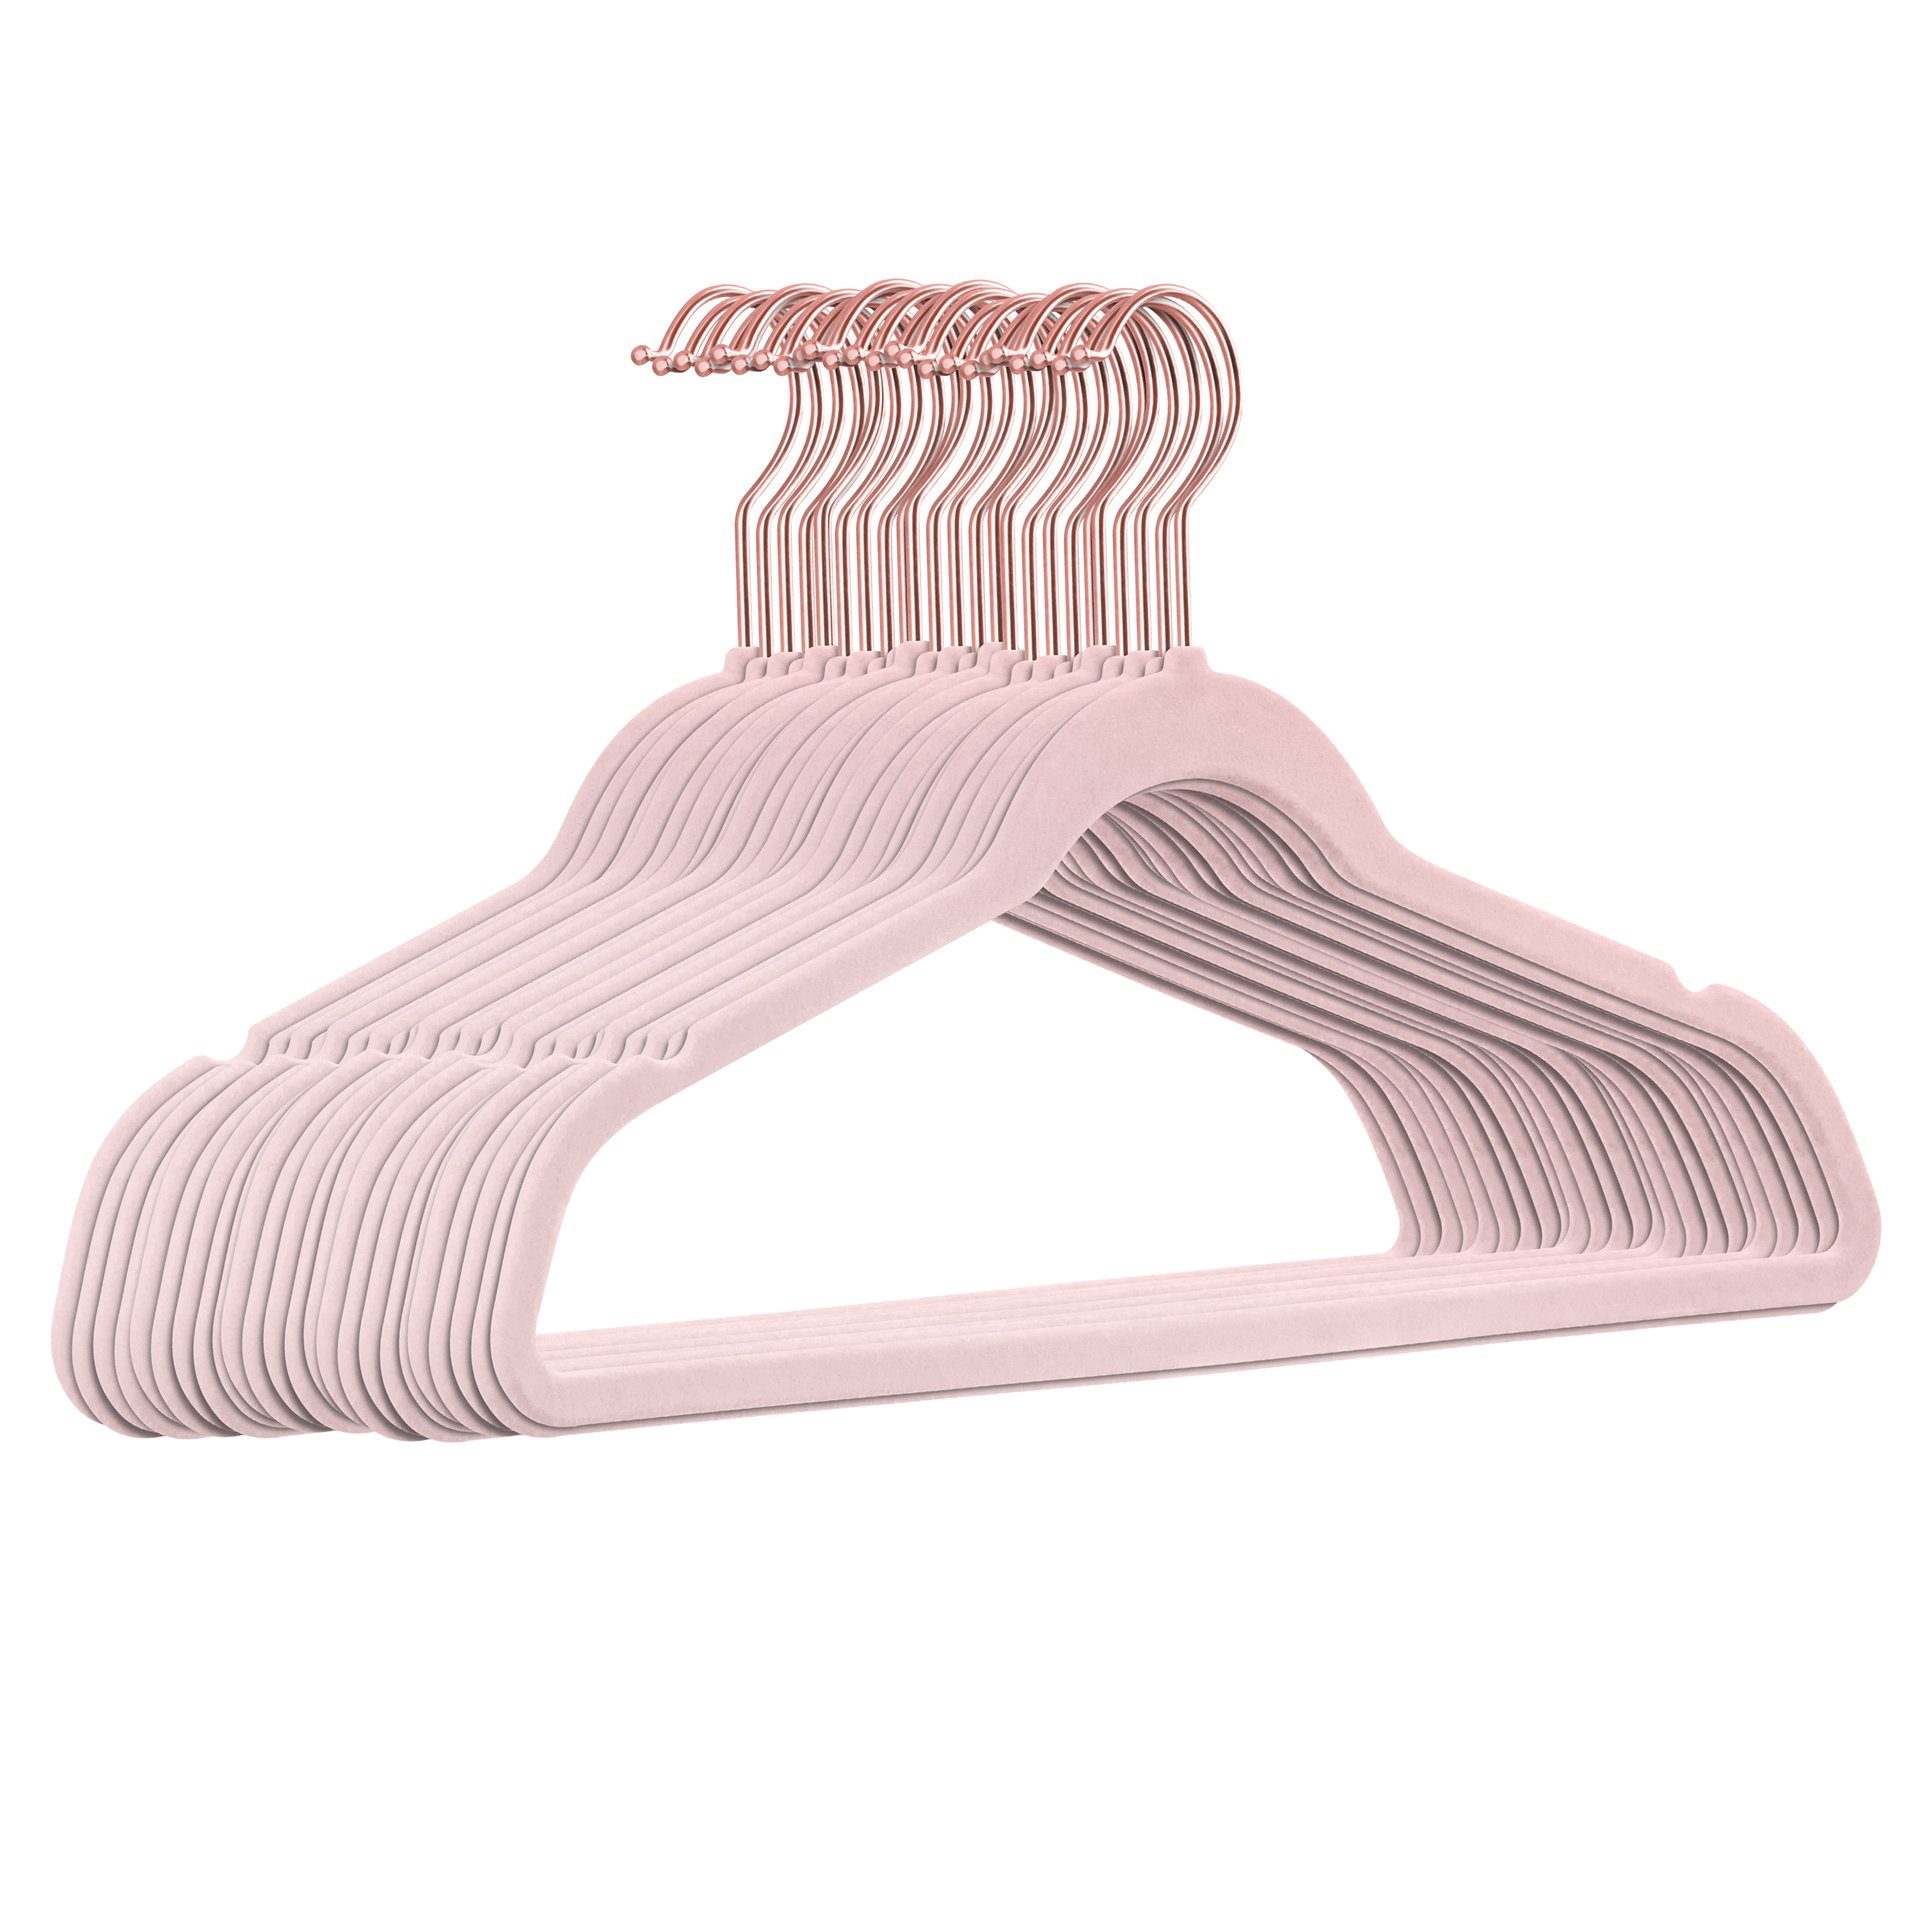 StickandShine Kleiderbügel 25 Stück Samt Kleiderbügel mit Rosegold Haken in verschiedenen Farben zur Wahl (25er Set) moderne luxus Bügel Rosa